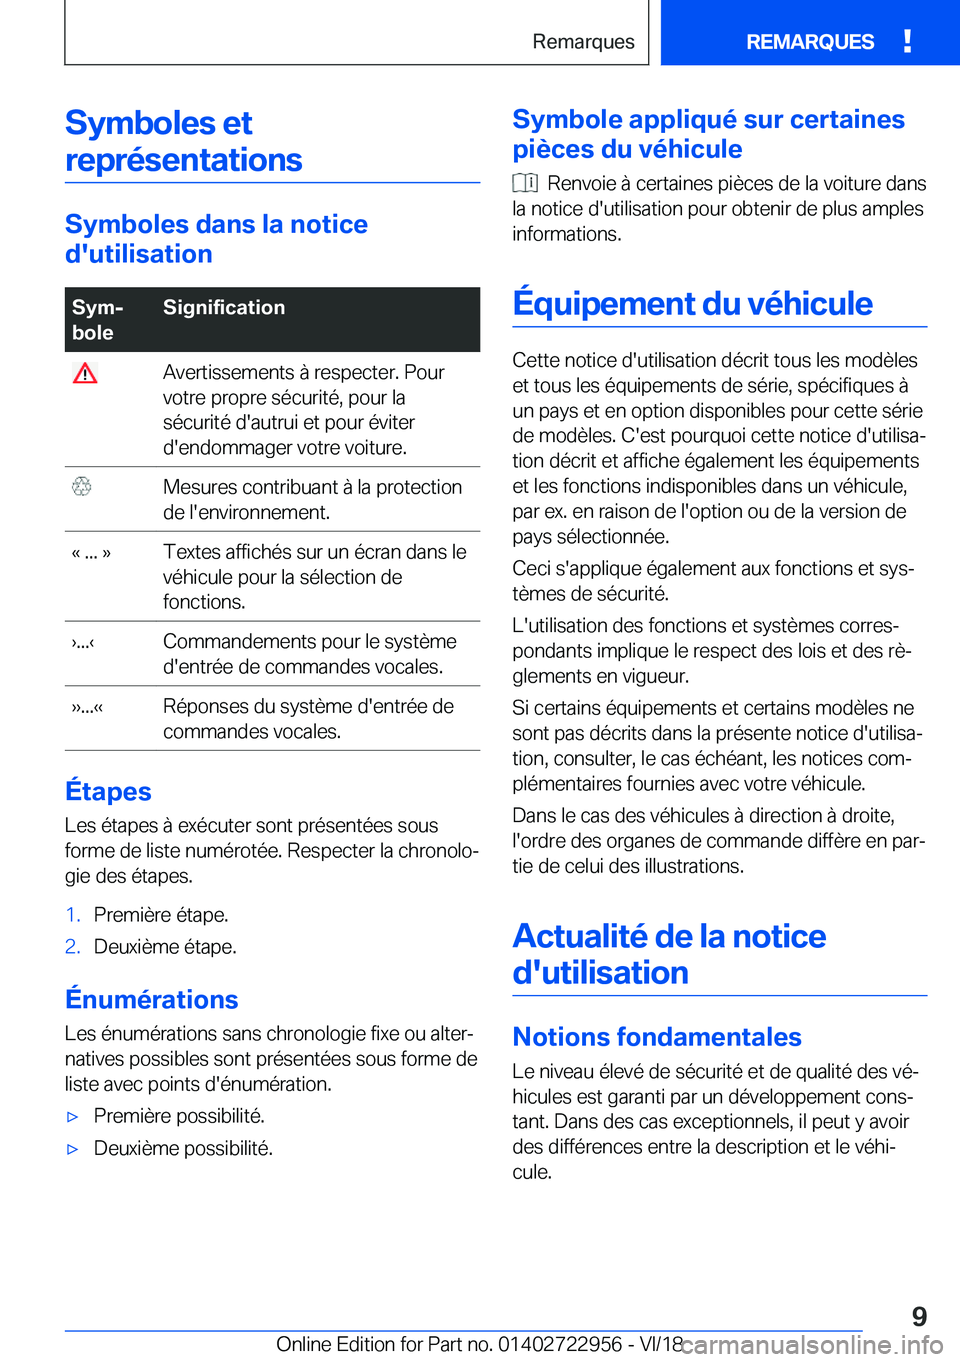 BMW M4 2019  Notices Demploi (in French) �S�y�m�b�o�l�e�s��e�t�r�e�p�r�é�s�e�n�t�a�t�i�o�n�s
�S�y�m�b�o�l�e�s��d�a�n�s��l�a��n�o�t�i�c�e
�d�'�u�t�i�l�i�s�a�t�i�o�n
�S�y�mj
�b�o�l�e�S�i�g�n�i�f�i�c�a�t�i�o�n��A�v�e�r�t�i�s�s�e�m�e�